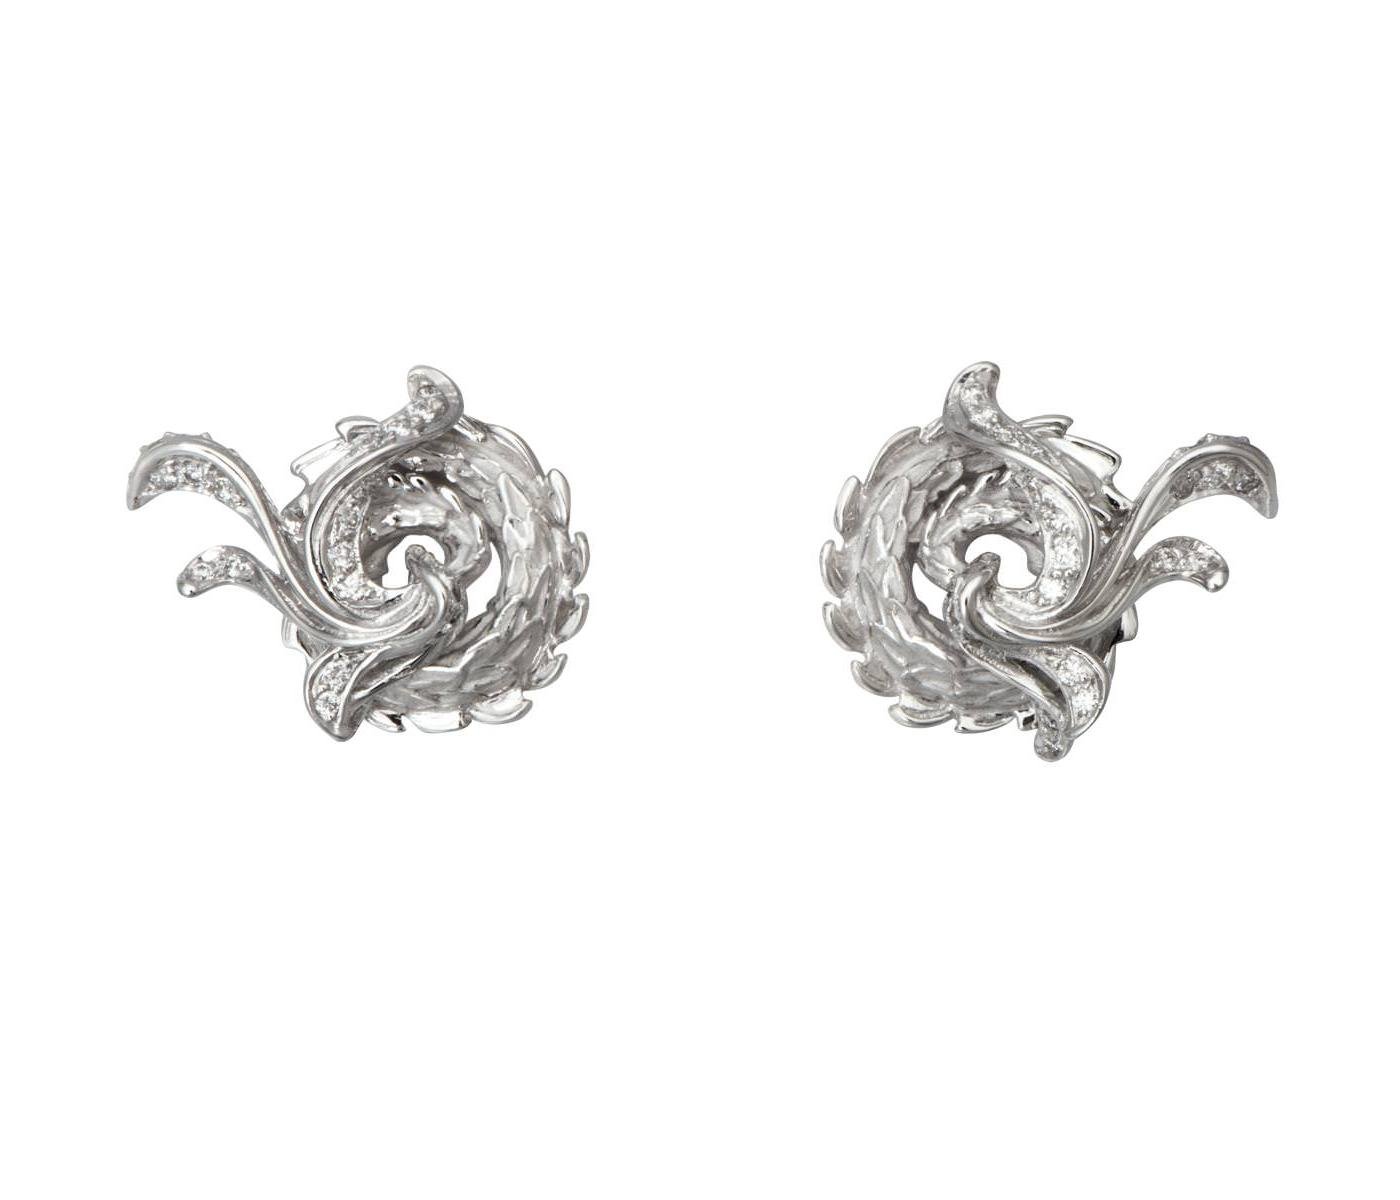 Earrings by Carrera y Carrera